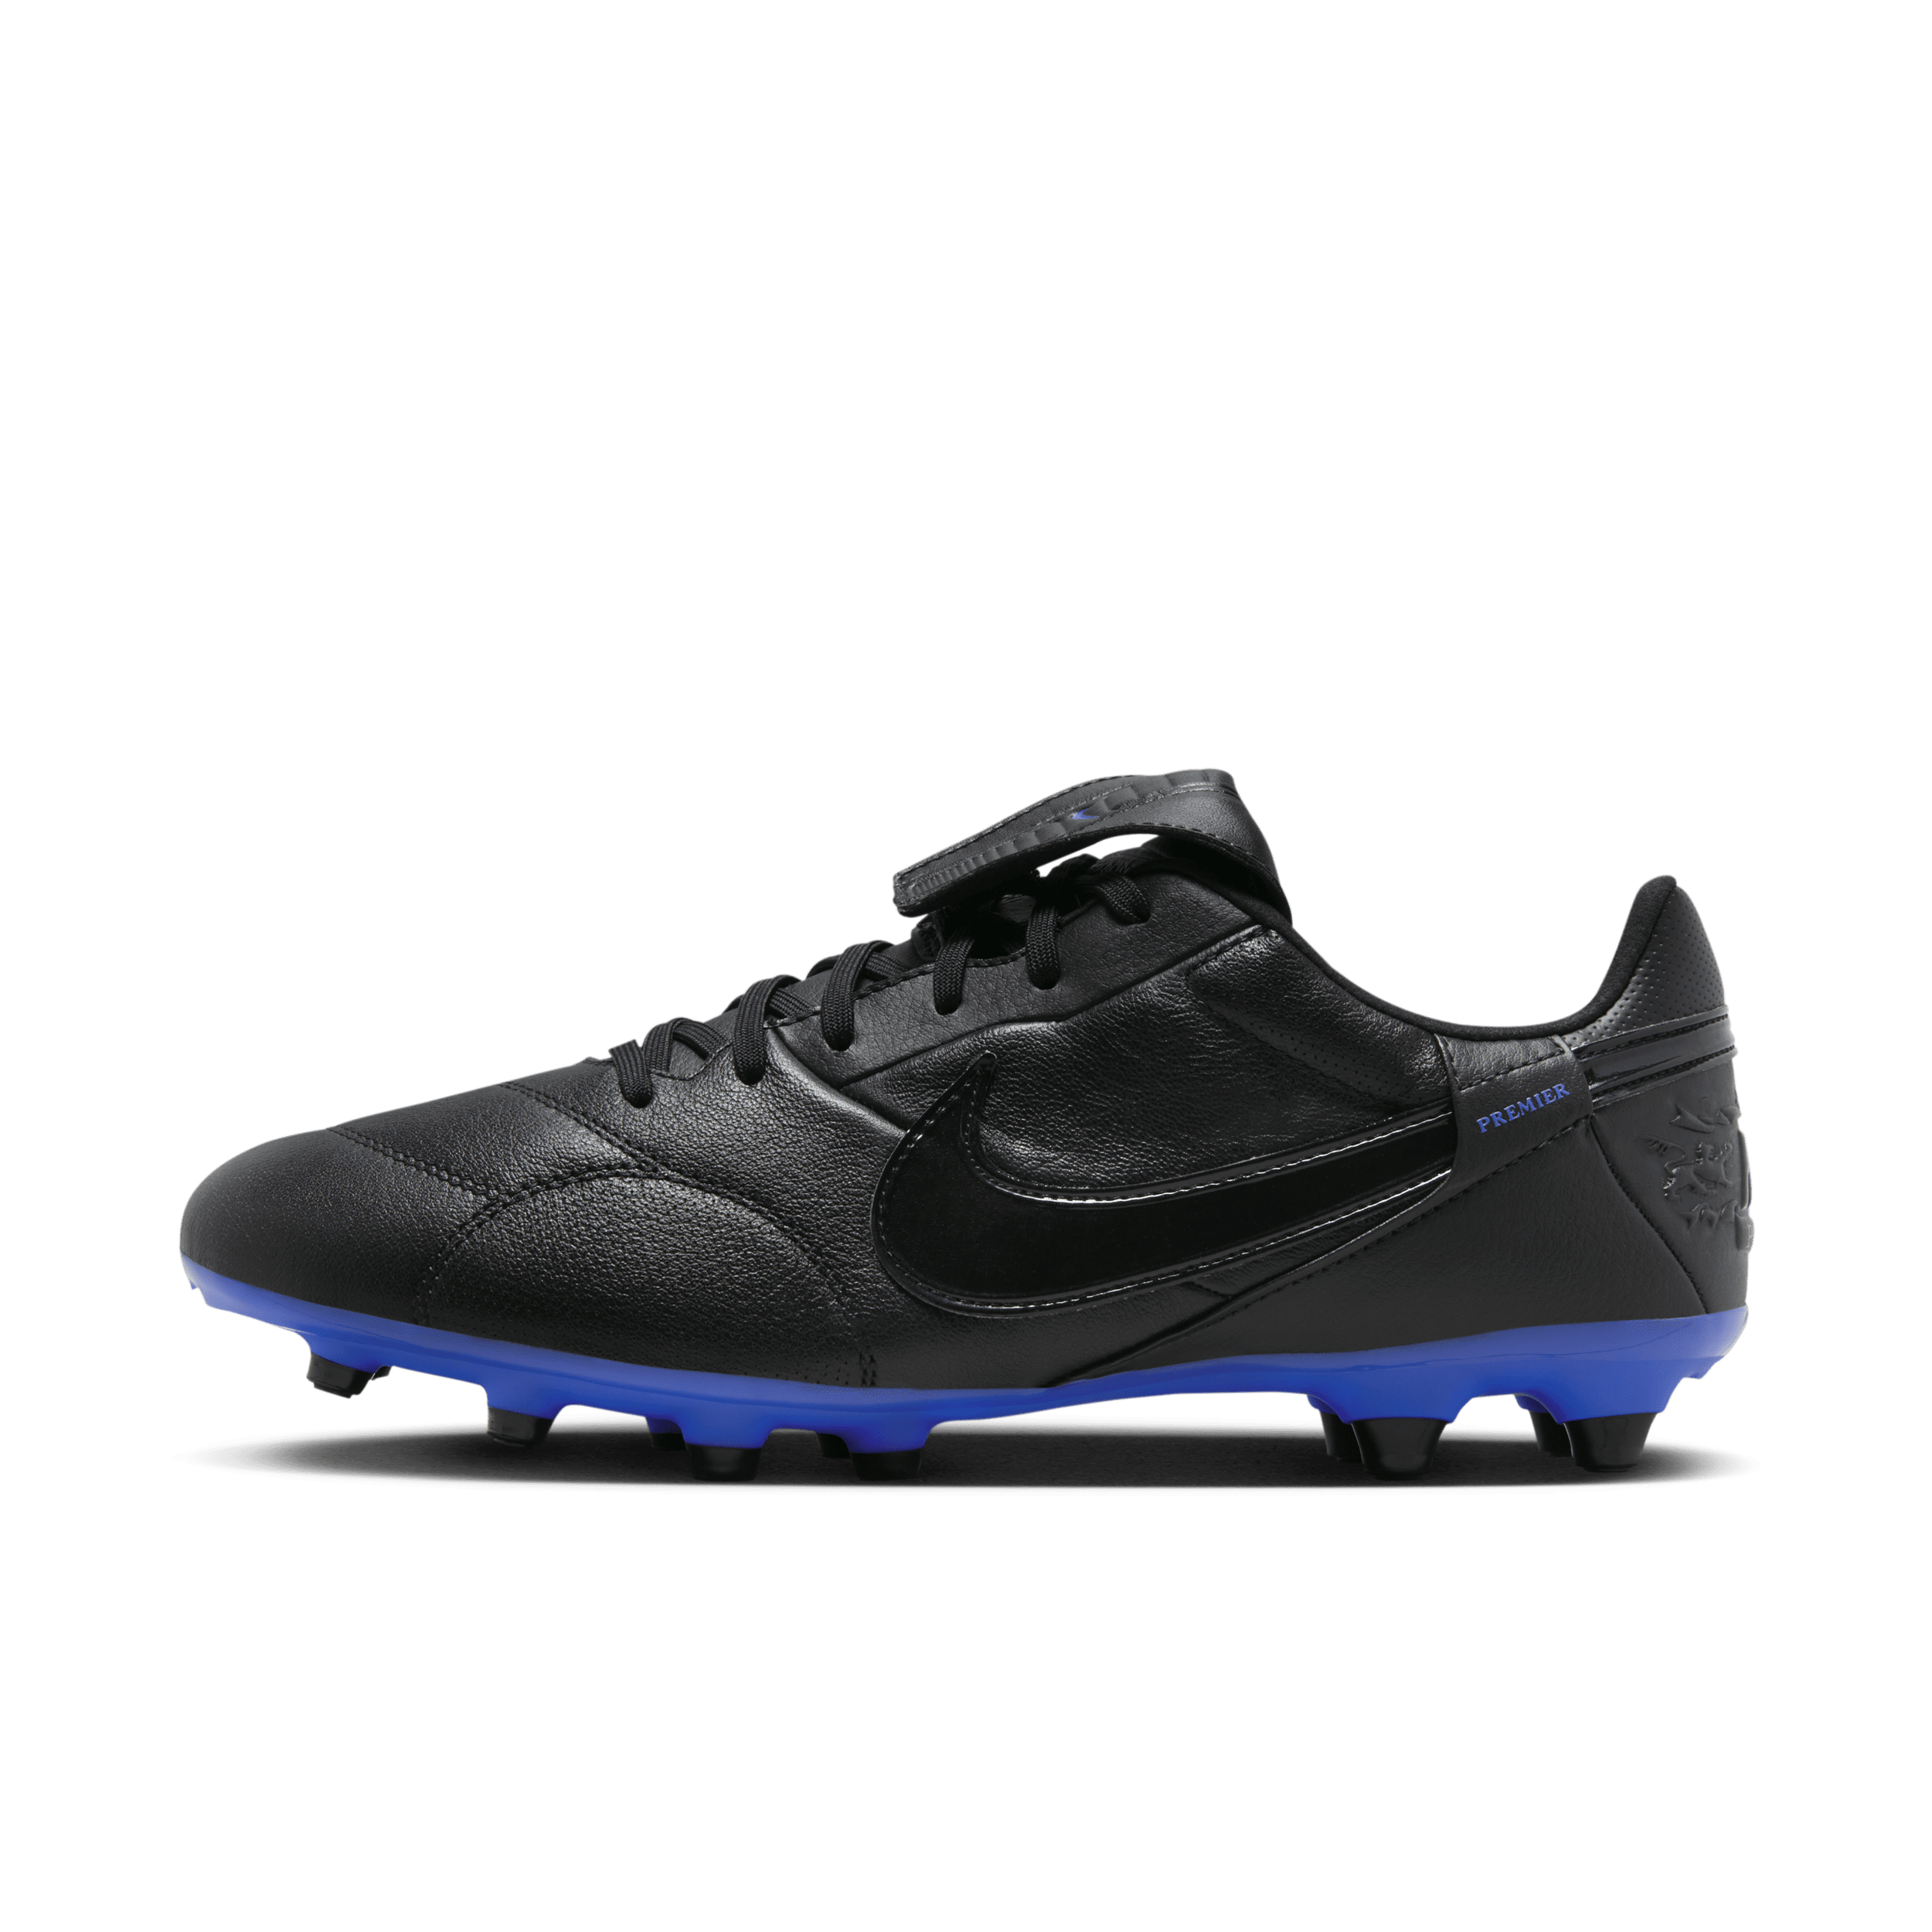 Scarpa da calcio a taglio basso per terreni duri Nike Premier 3 - Nero